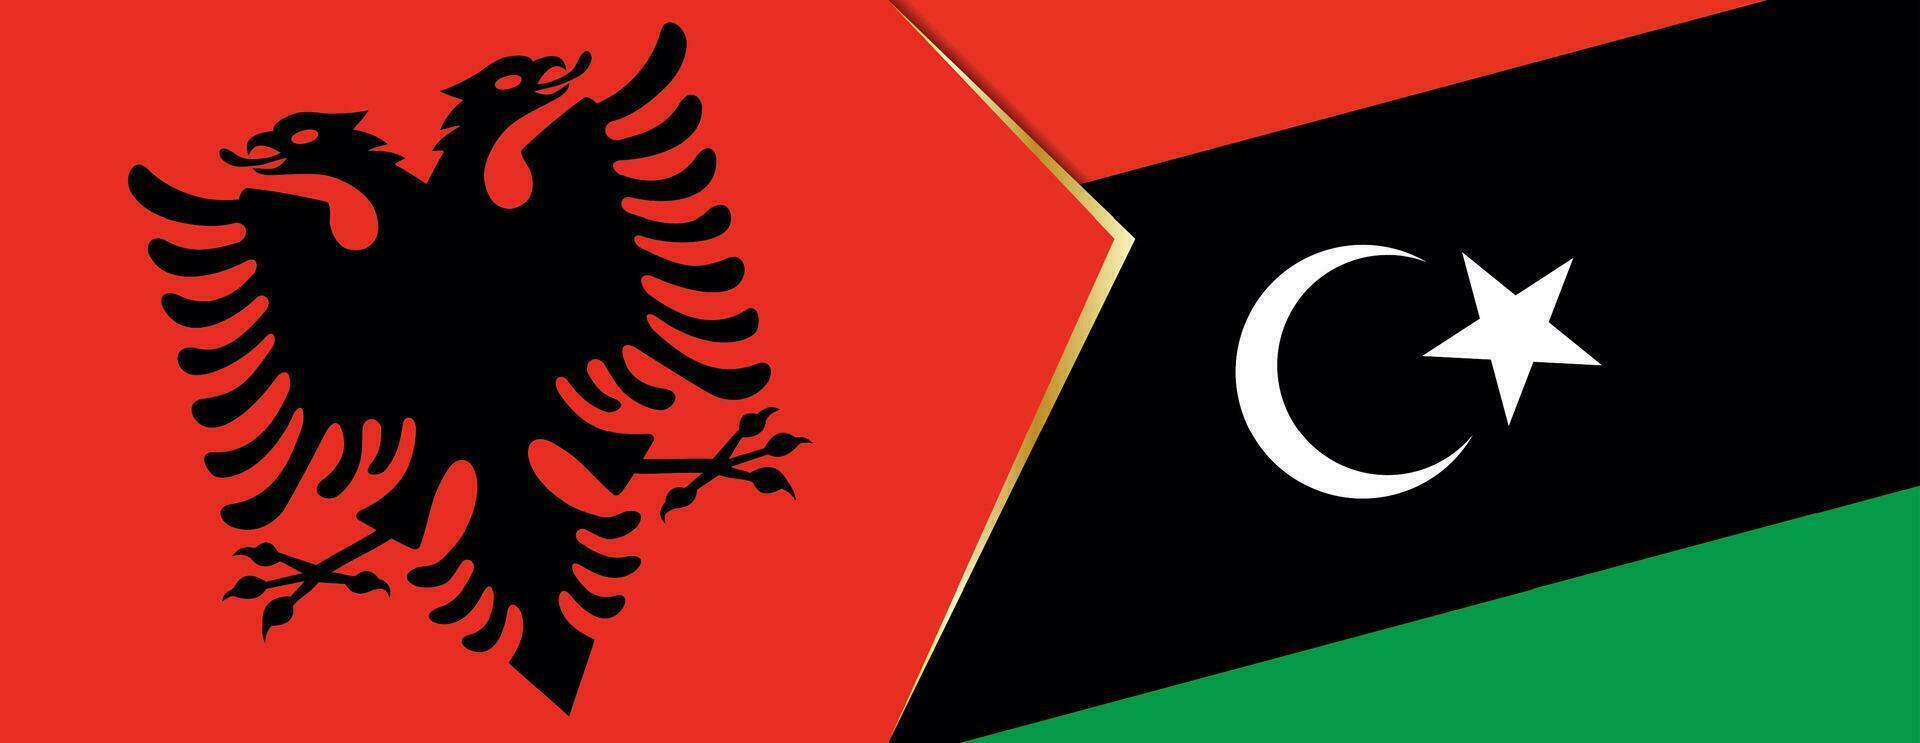 Albania e Libia bandiere, Due vettore bandiere.